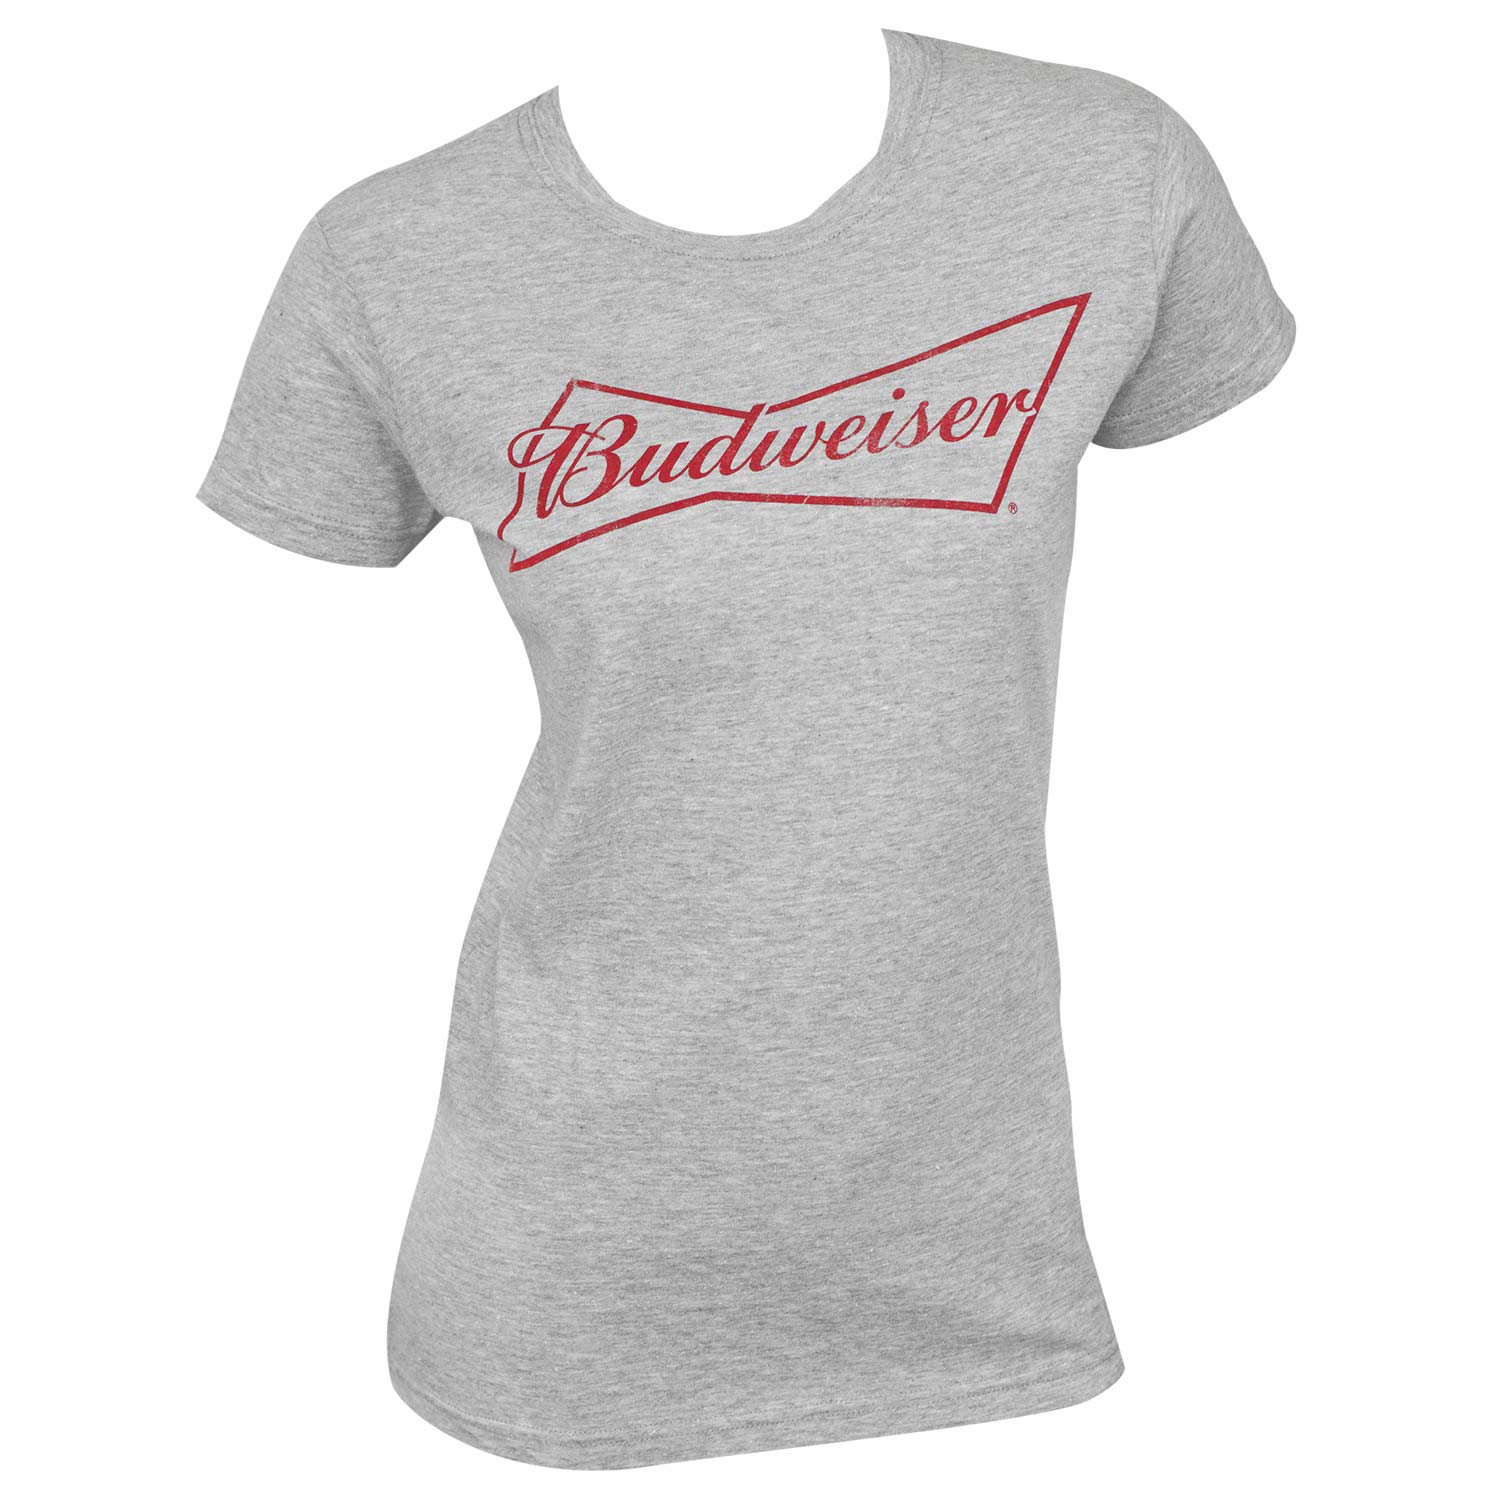 Budweiser Women's Grey Tee Shirt